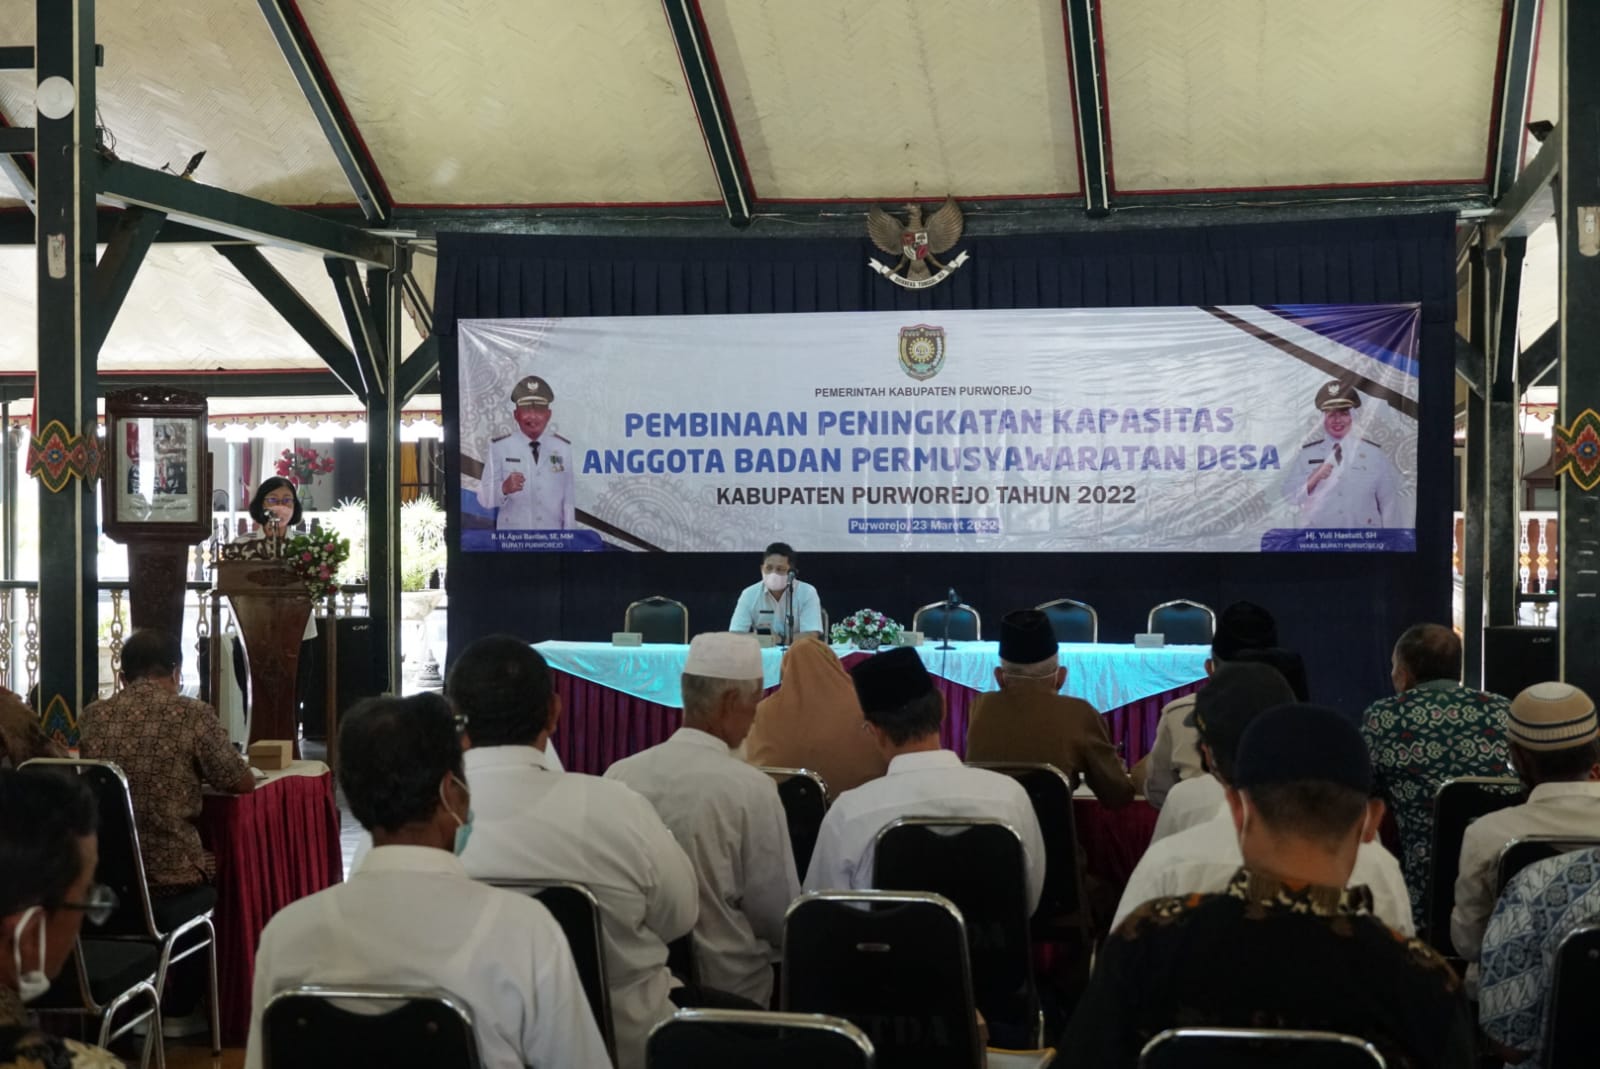 Asisten Administrasi dan Umum drg Nancy Megawati Hadisusilo MM memberi pengarahan di Pendopo Kabupaten Purworejo. Dok/Achmad Rohadi/Lingkar.co